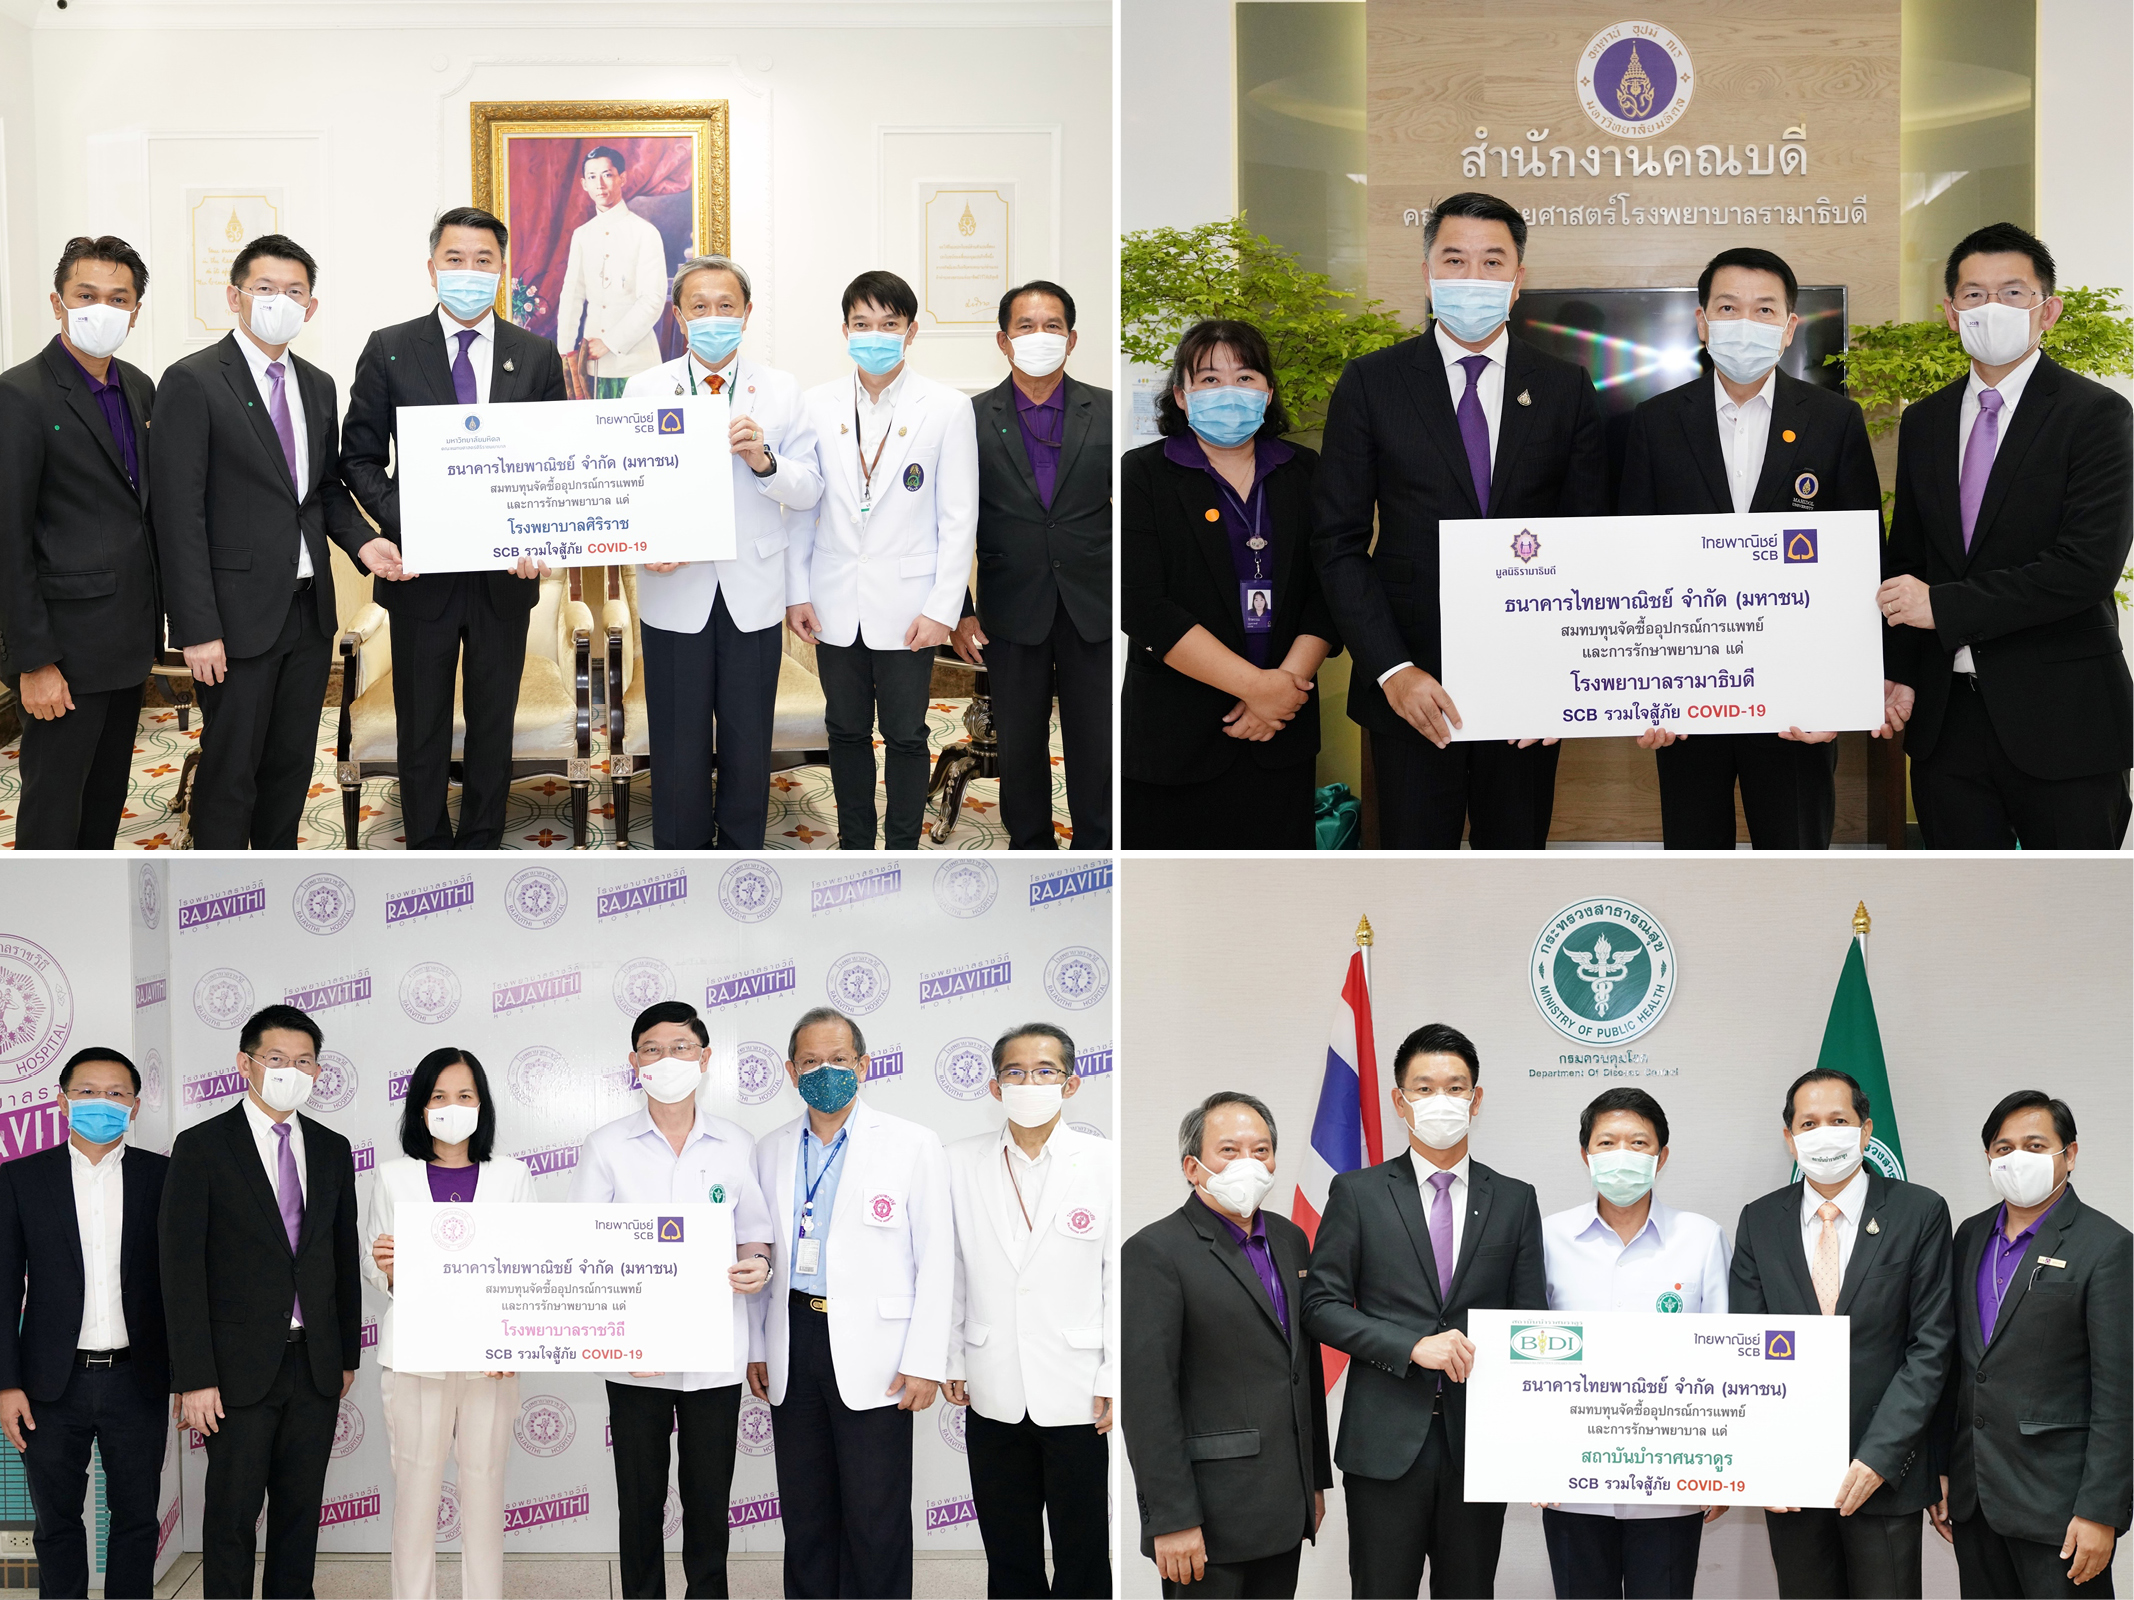 ธนาคารไทยพาณิชย์รวมใจสู้ภัยไวรัส COVID-19 ร่วมบริจาคให้ 5 โรงพยาบาลเพื่อจัดซื้ออุปกรณ์ทางการแพทย์